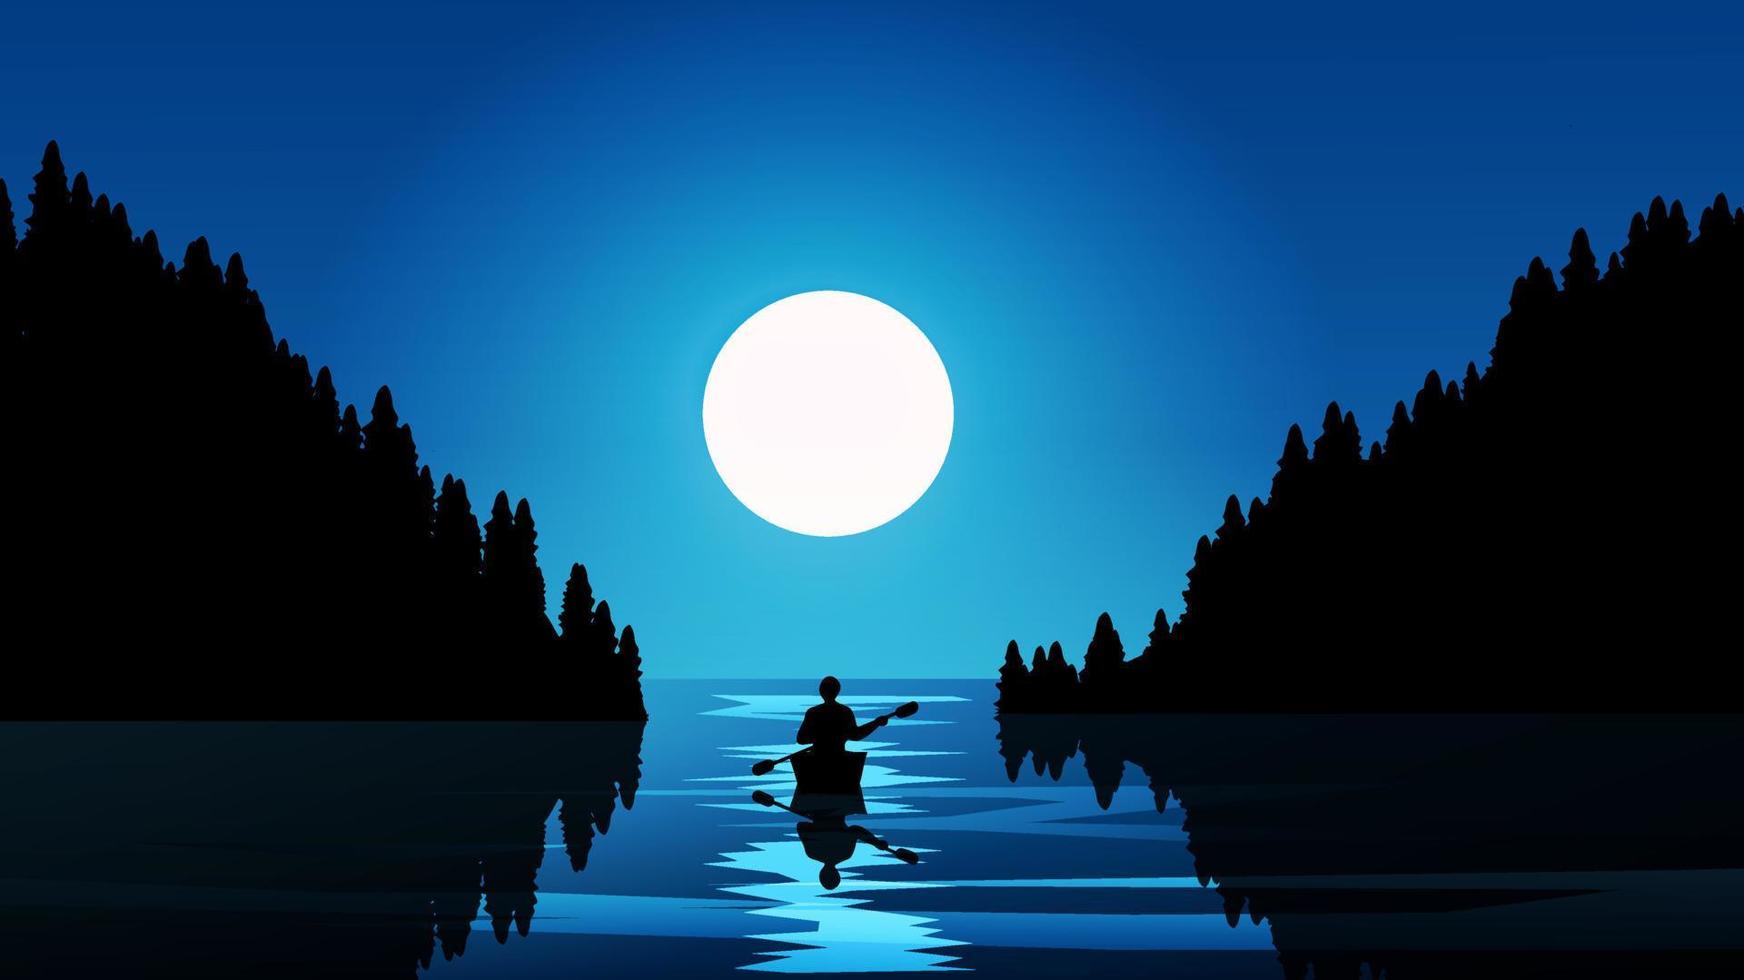 luna llena en la costa con un hombre en canoa vector